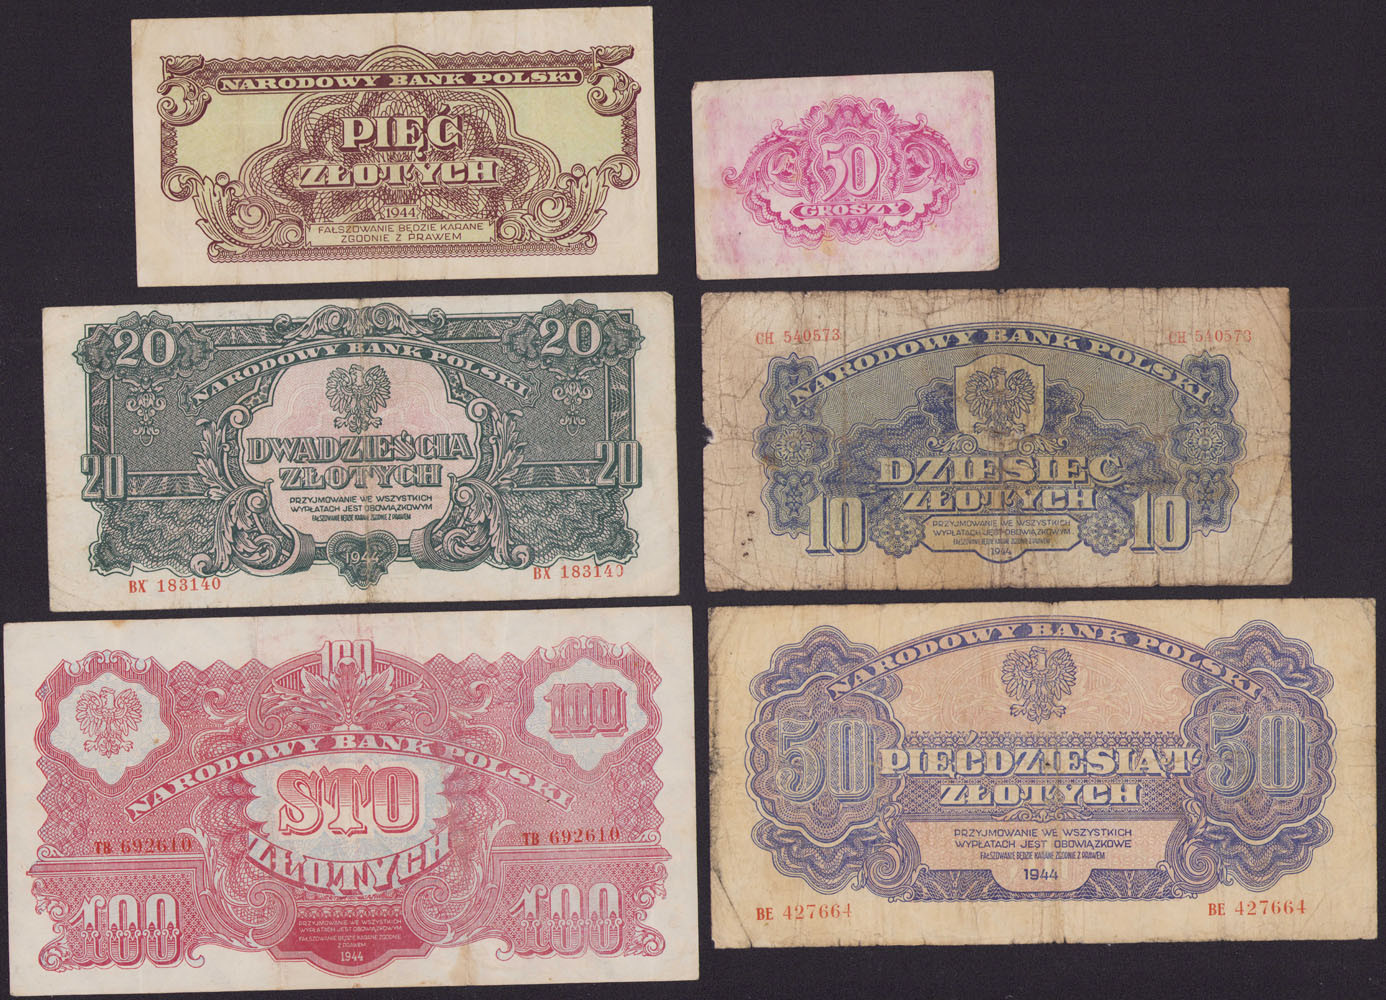 50 groszy - 100 złotych 1944, zestaw 6 banknotów